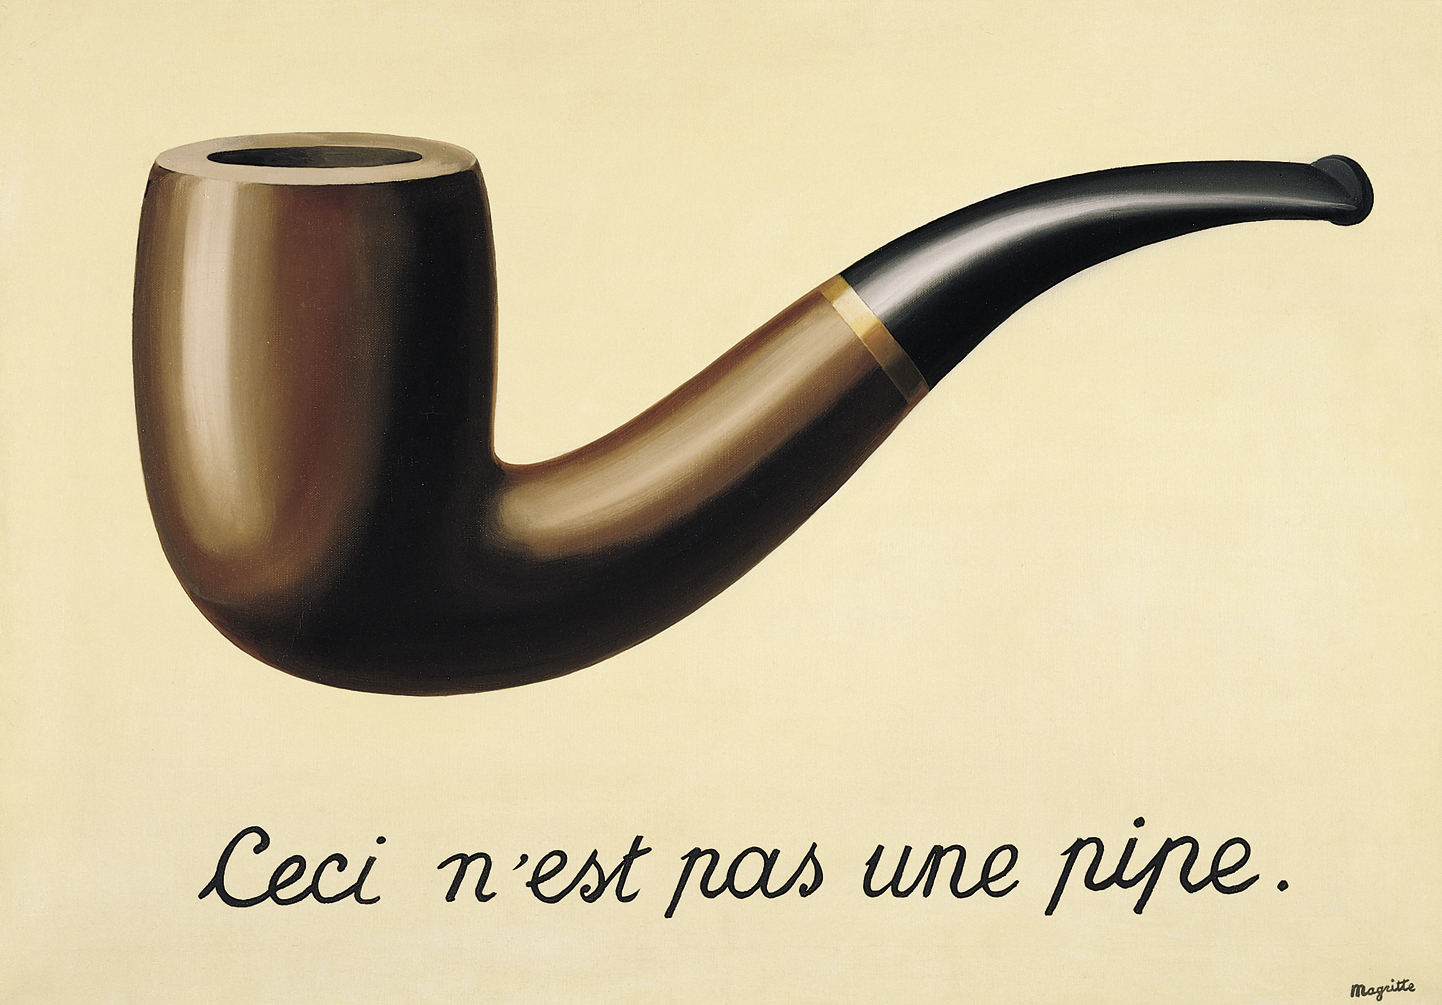 Вероломство образов (Это не трубка) by René Magritte - 1948 - - 